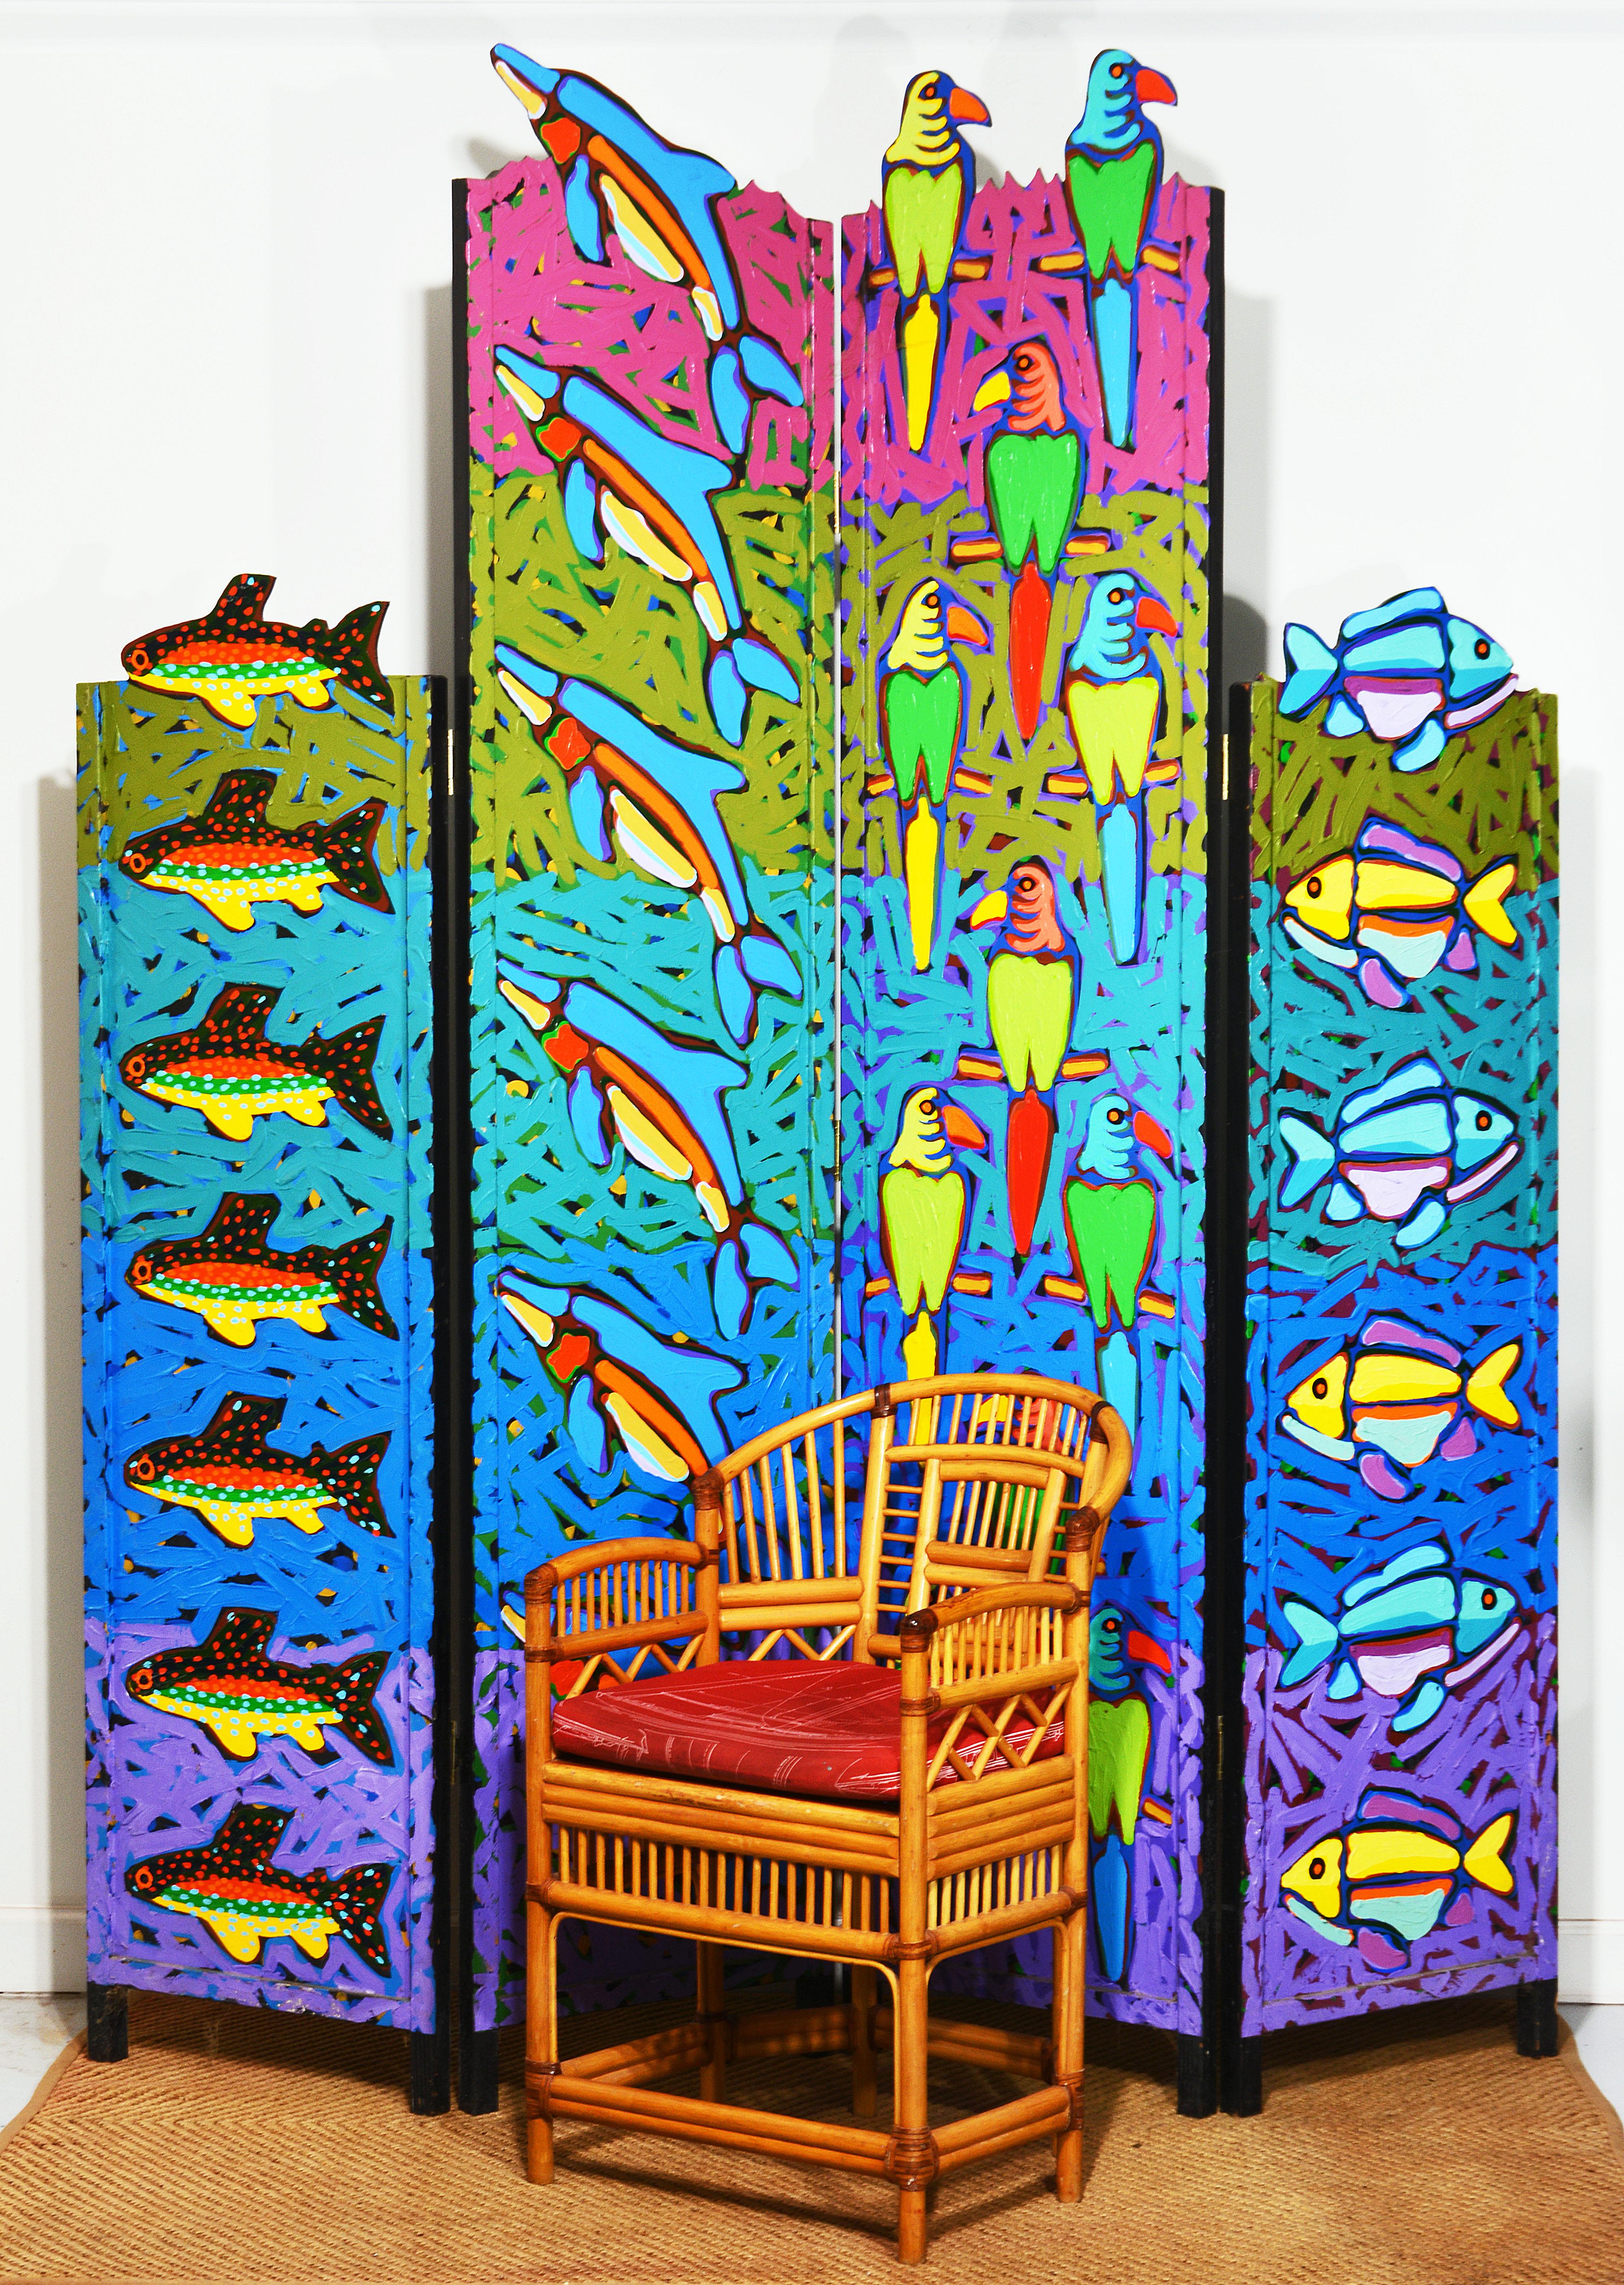 Dieser Paravent des in Atlanta und Savannah lebenden Künstlers und Professors Sam Francis ist eine prächtige Darstellung von leuchtenden Farben, tropischen Fischen und Papageien. Es erinnert an Florida. Als Gemälde dehnt es sich über die